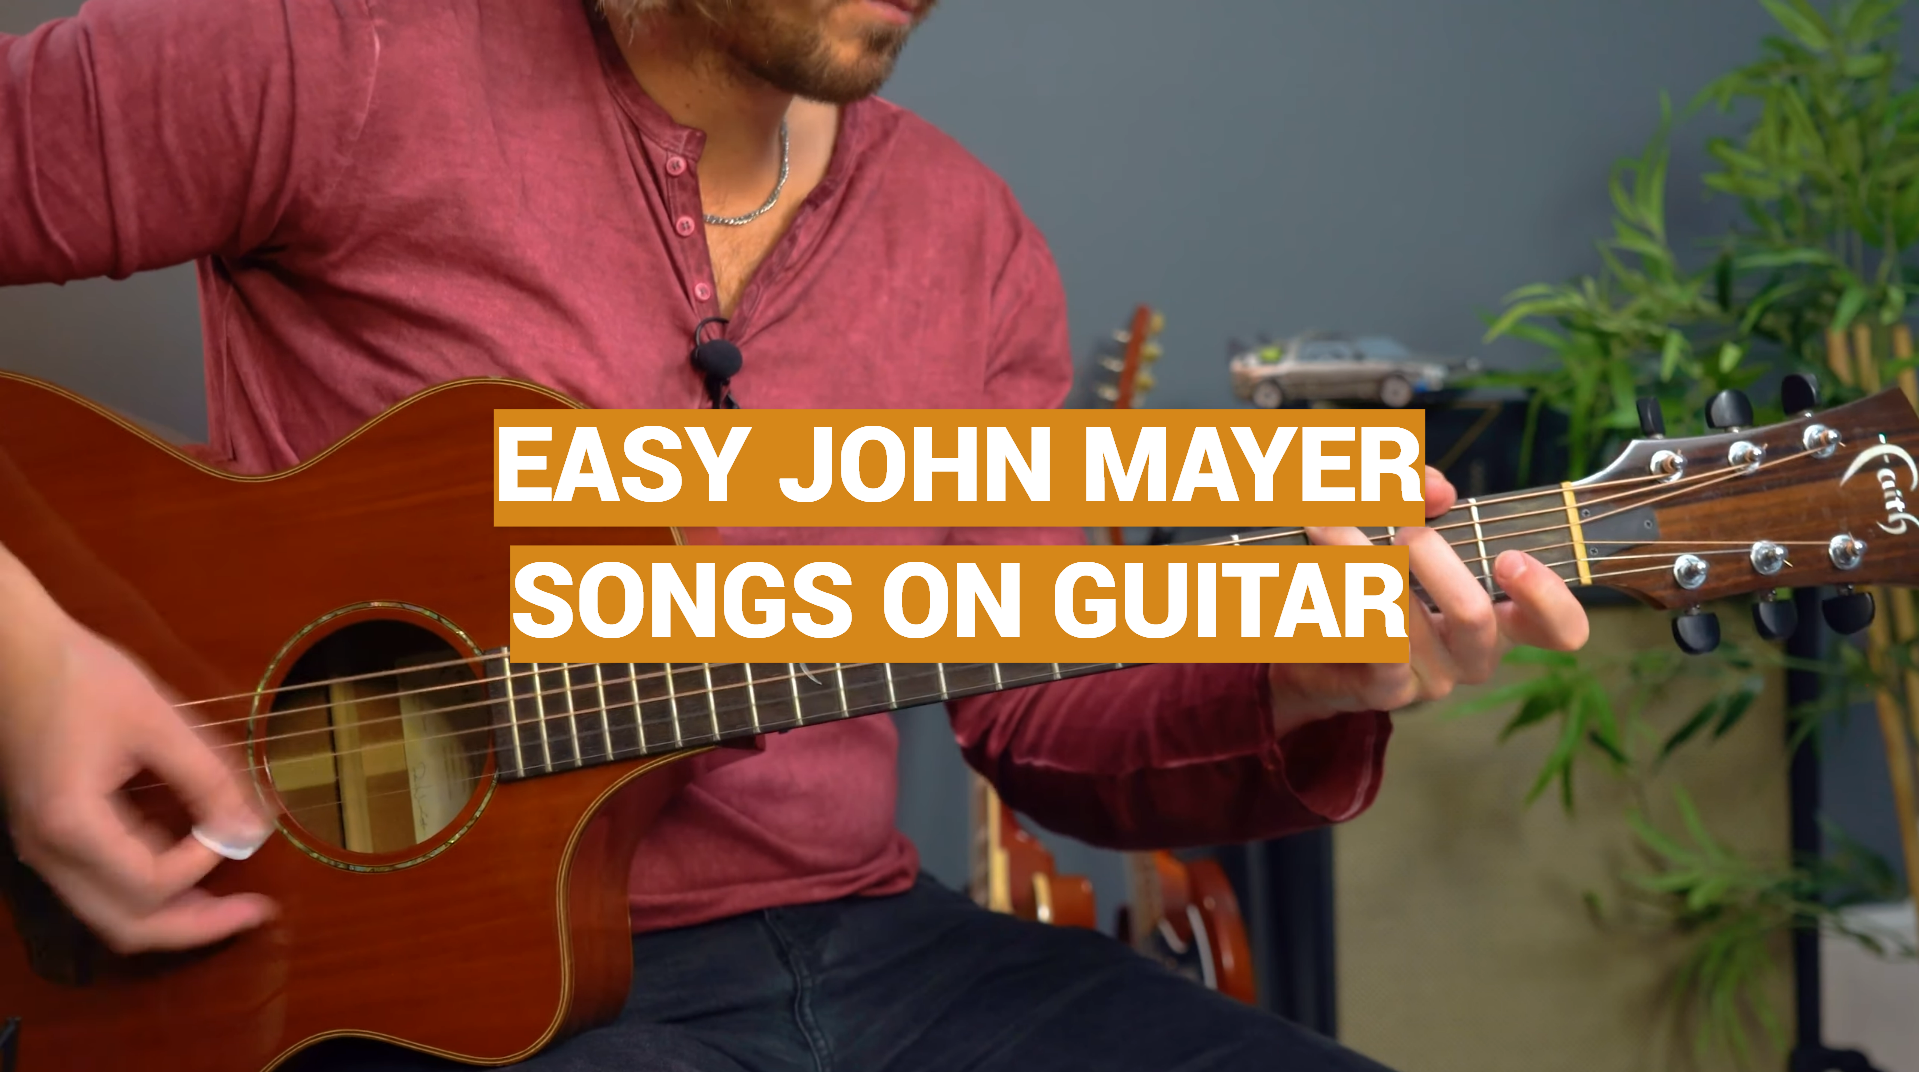 Easy John Mayer Songs on Guitar